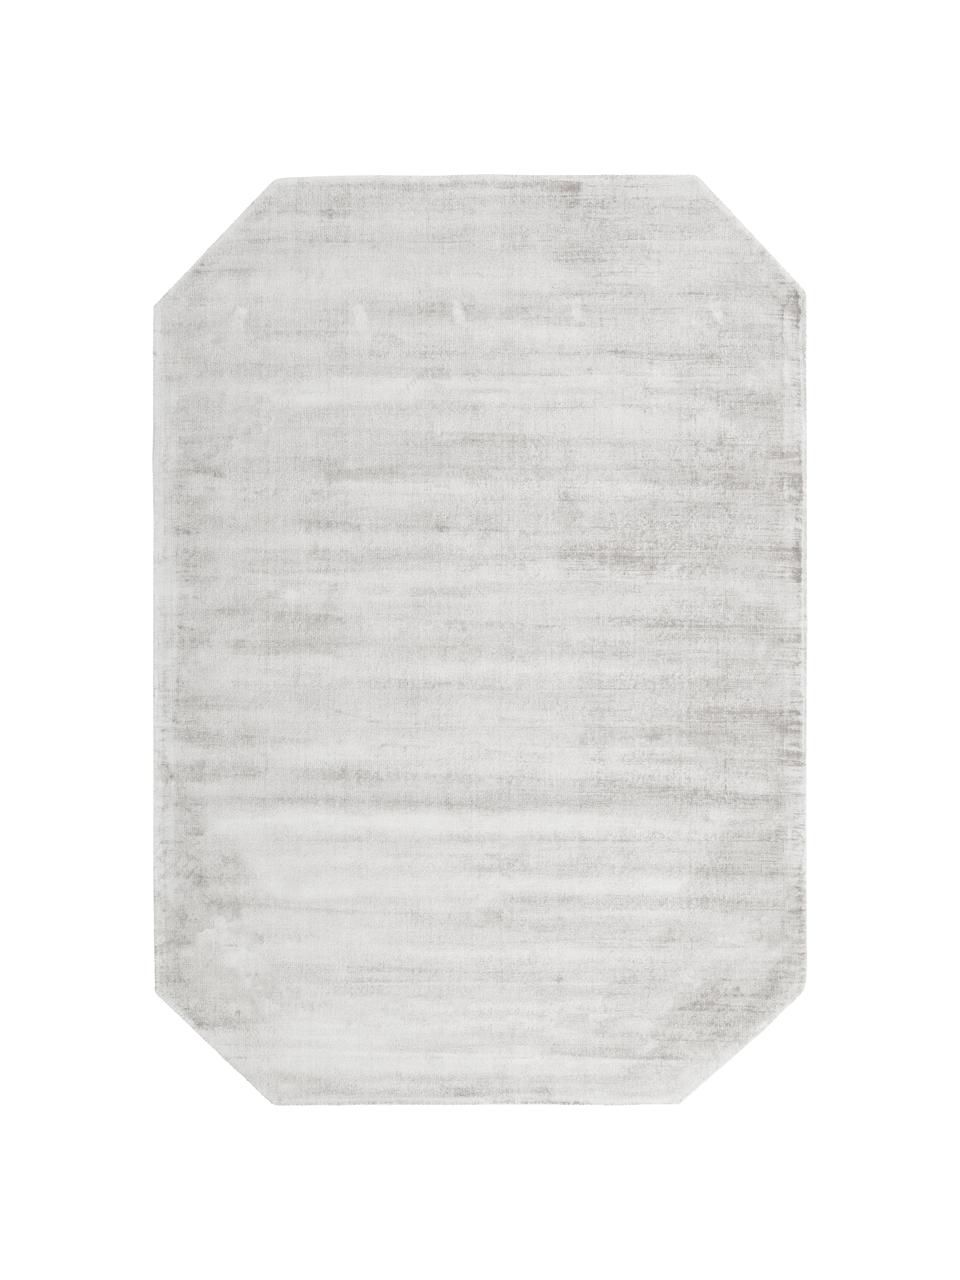 Viscose vloerkleed Jane Diamond, Bovenzijde: 100% viscose, Onderzijde: 100% katoen, Lichtgrijs-beige, 160 x 230 cm